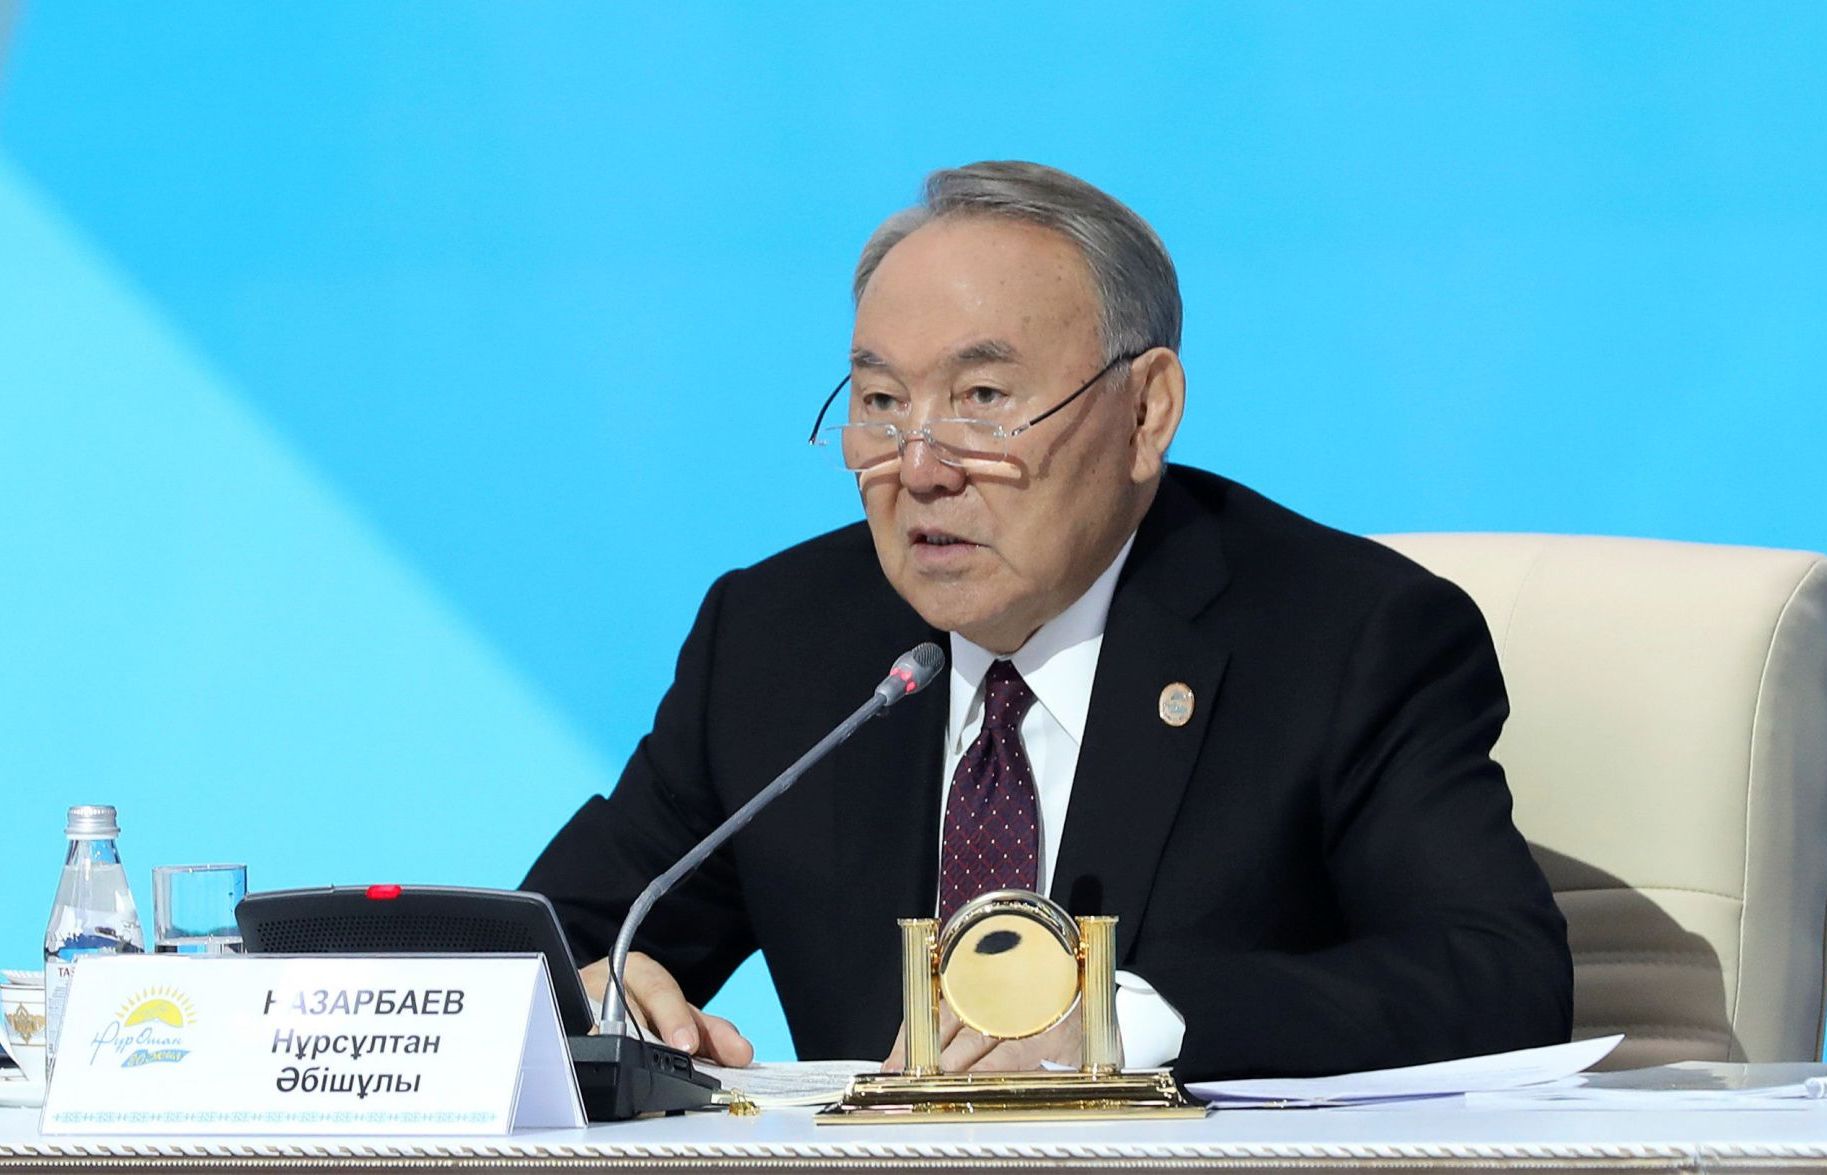 Cựu Tổng thống Kazakhstan đề nghị tổ chức cuộc gặp Nga - Ukraine để giải quyết xung đột